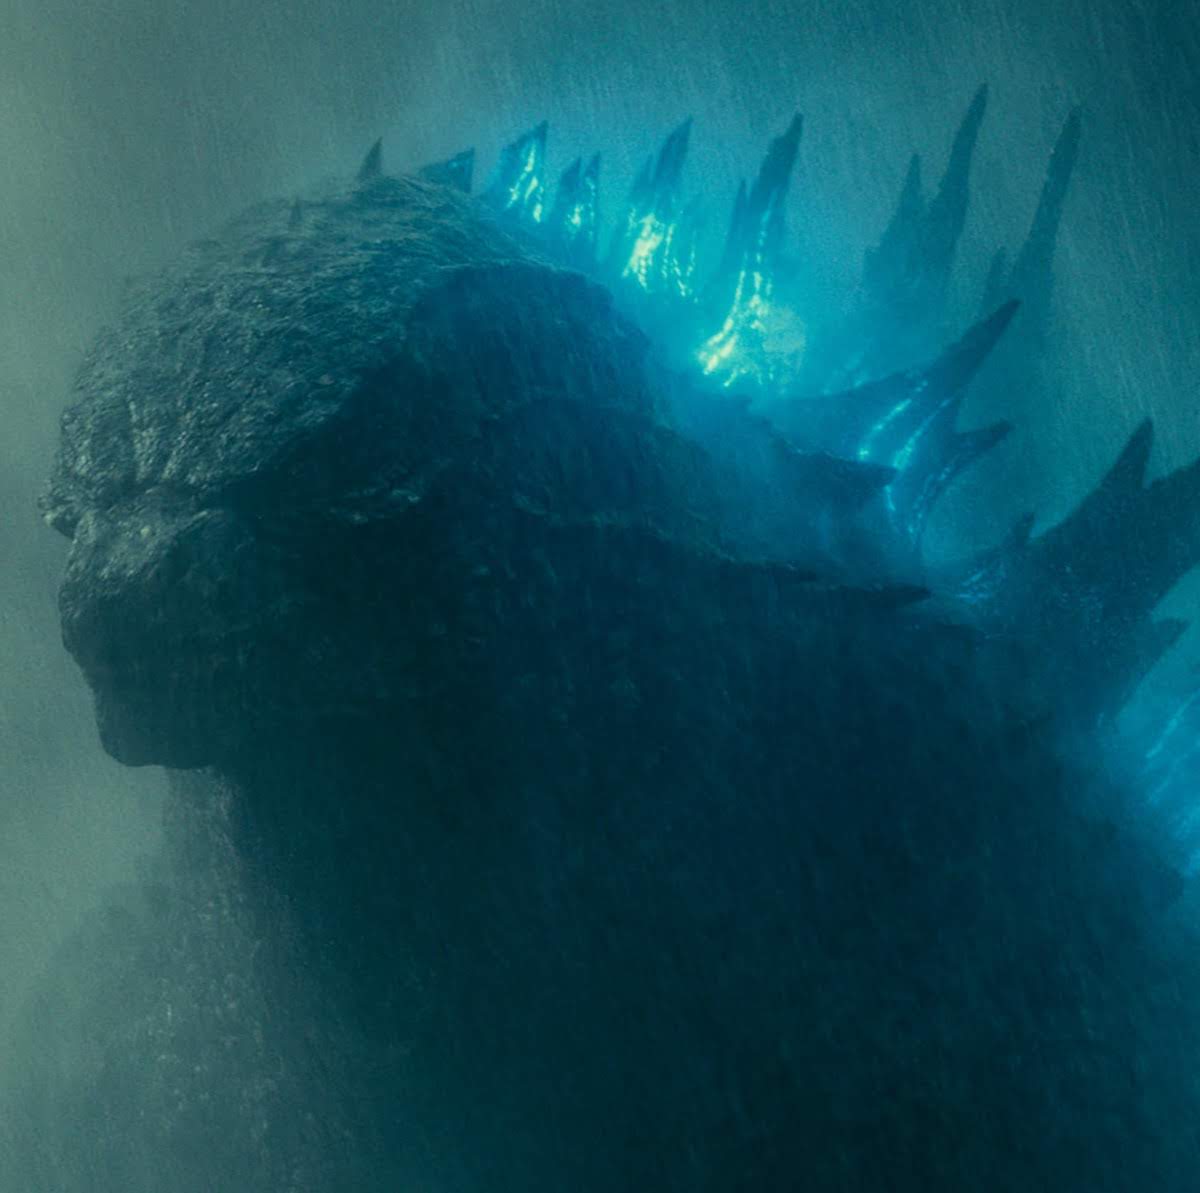 Godzilla: King of the Monsters - Retro Trailer : ハリウッド版「ゴジラ」の第2弾「キング・オブ・ザ・モンスターズ」を、1950年代の俗っぽい古典モンスター映画にしてみたファンメイドの予告編 ! !